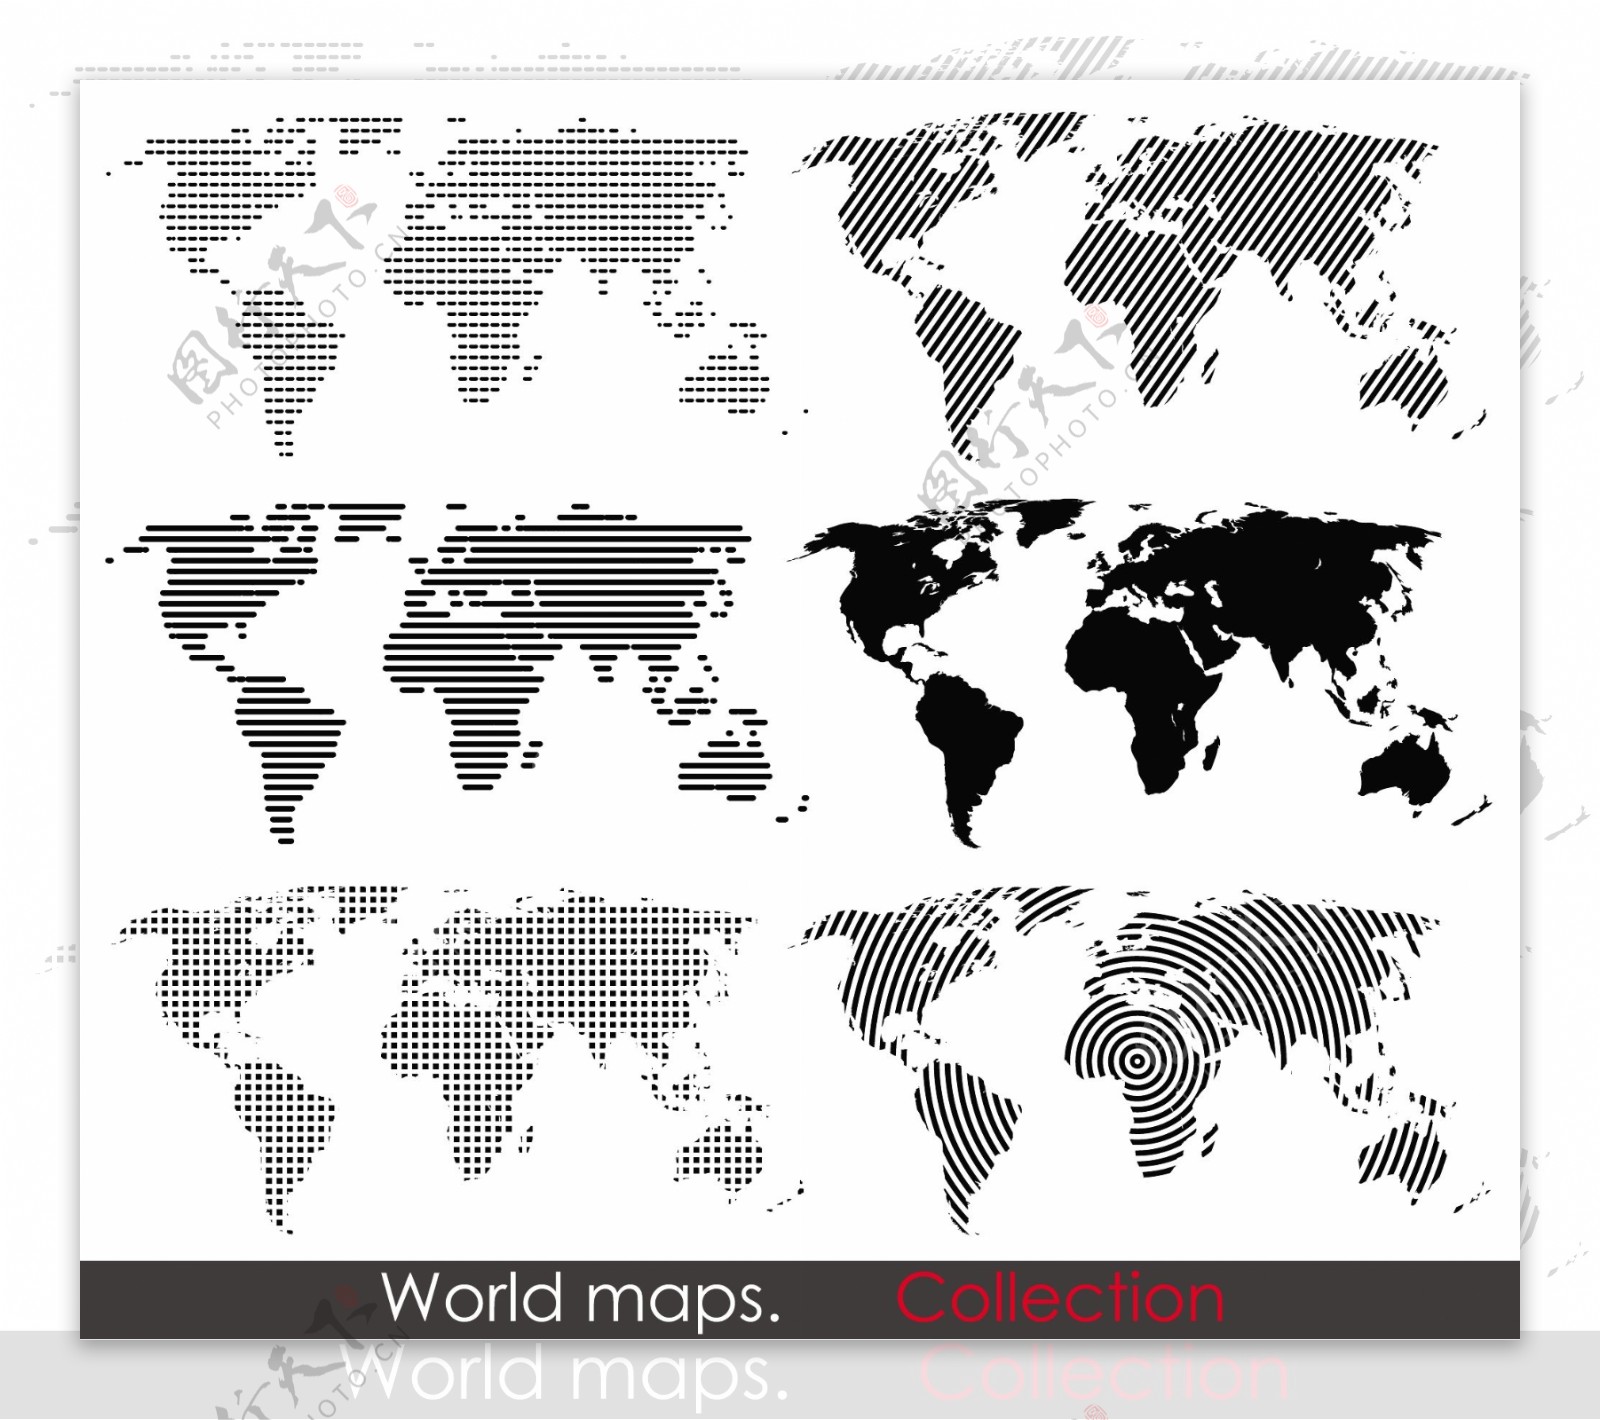 点状世界地图矢量素材